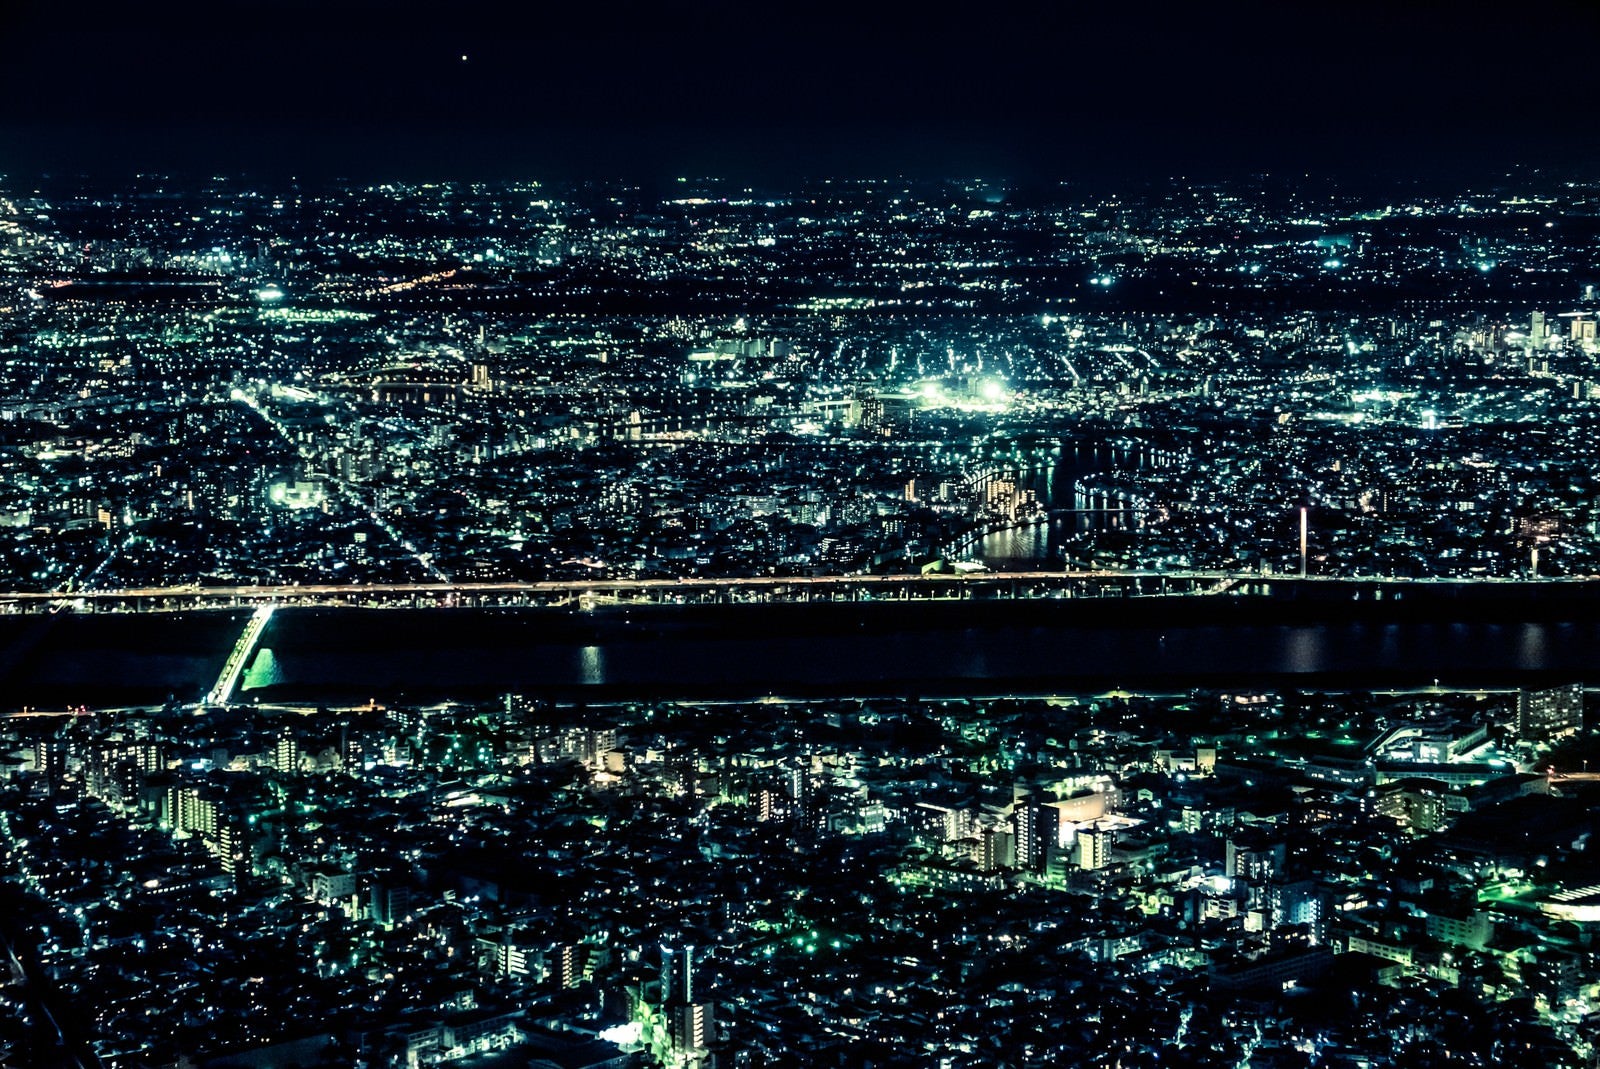 「光り輝く都会の夜景」の写真